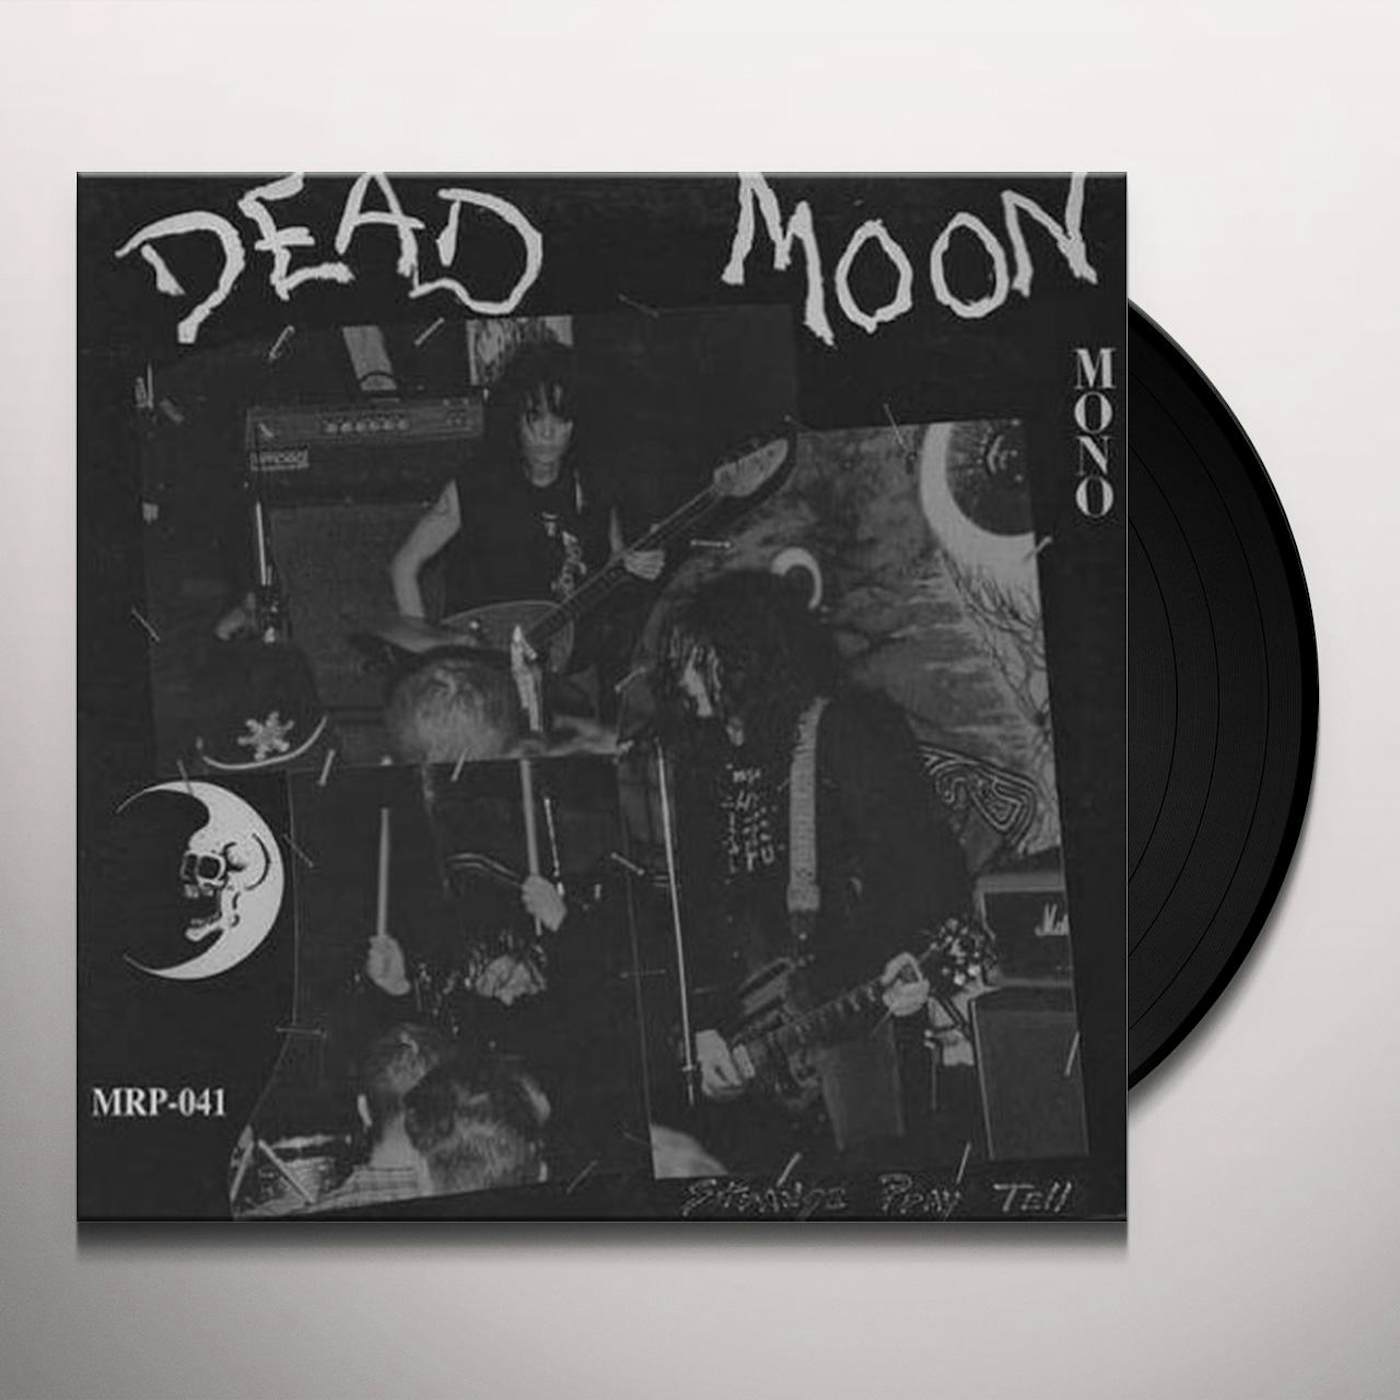 Dead Moon Strange Pray Tell Vinyl Record